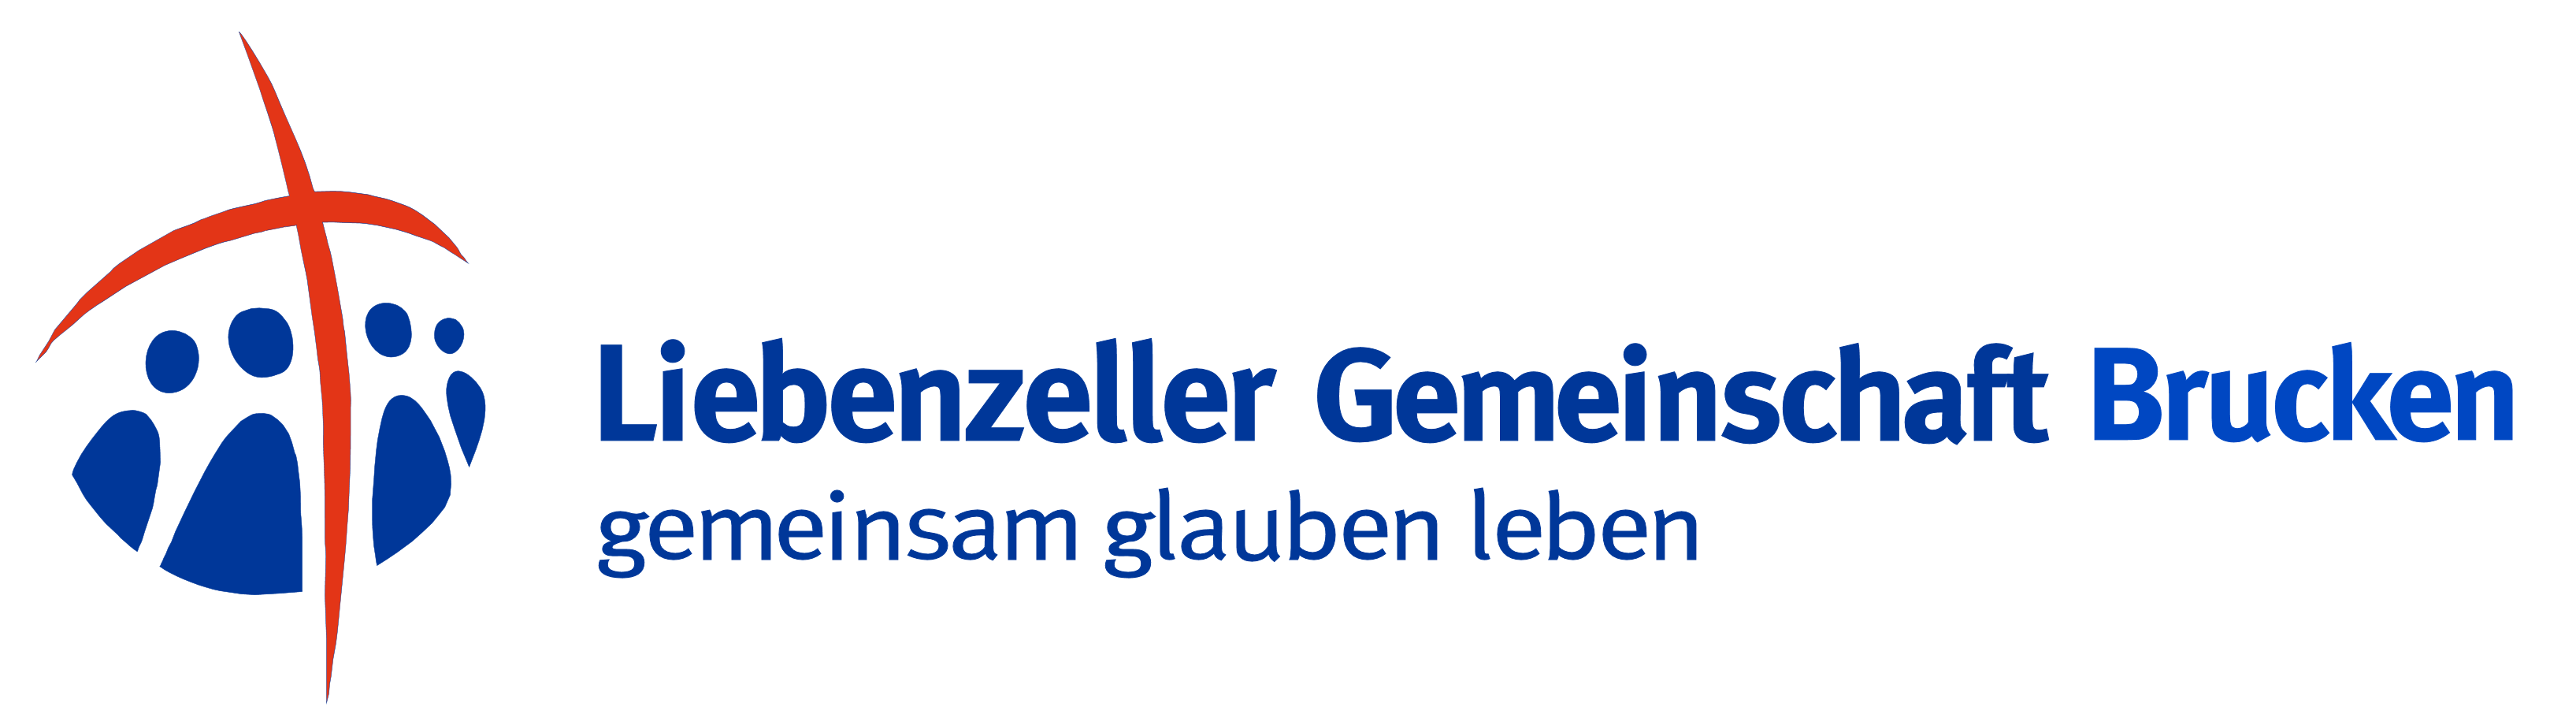 LGV Brucken logo